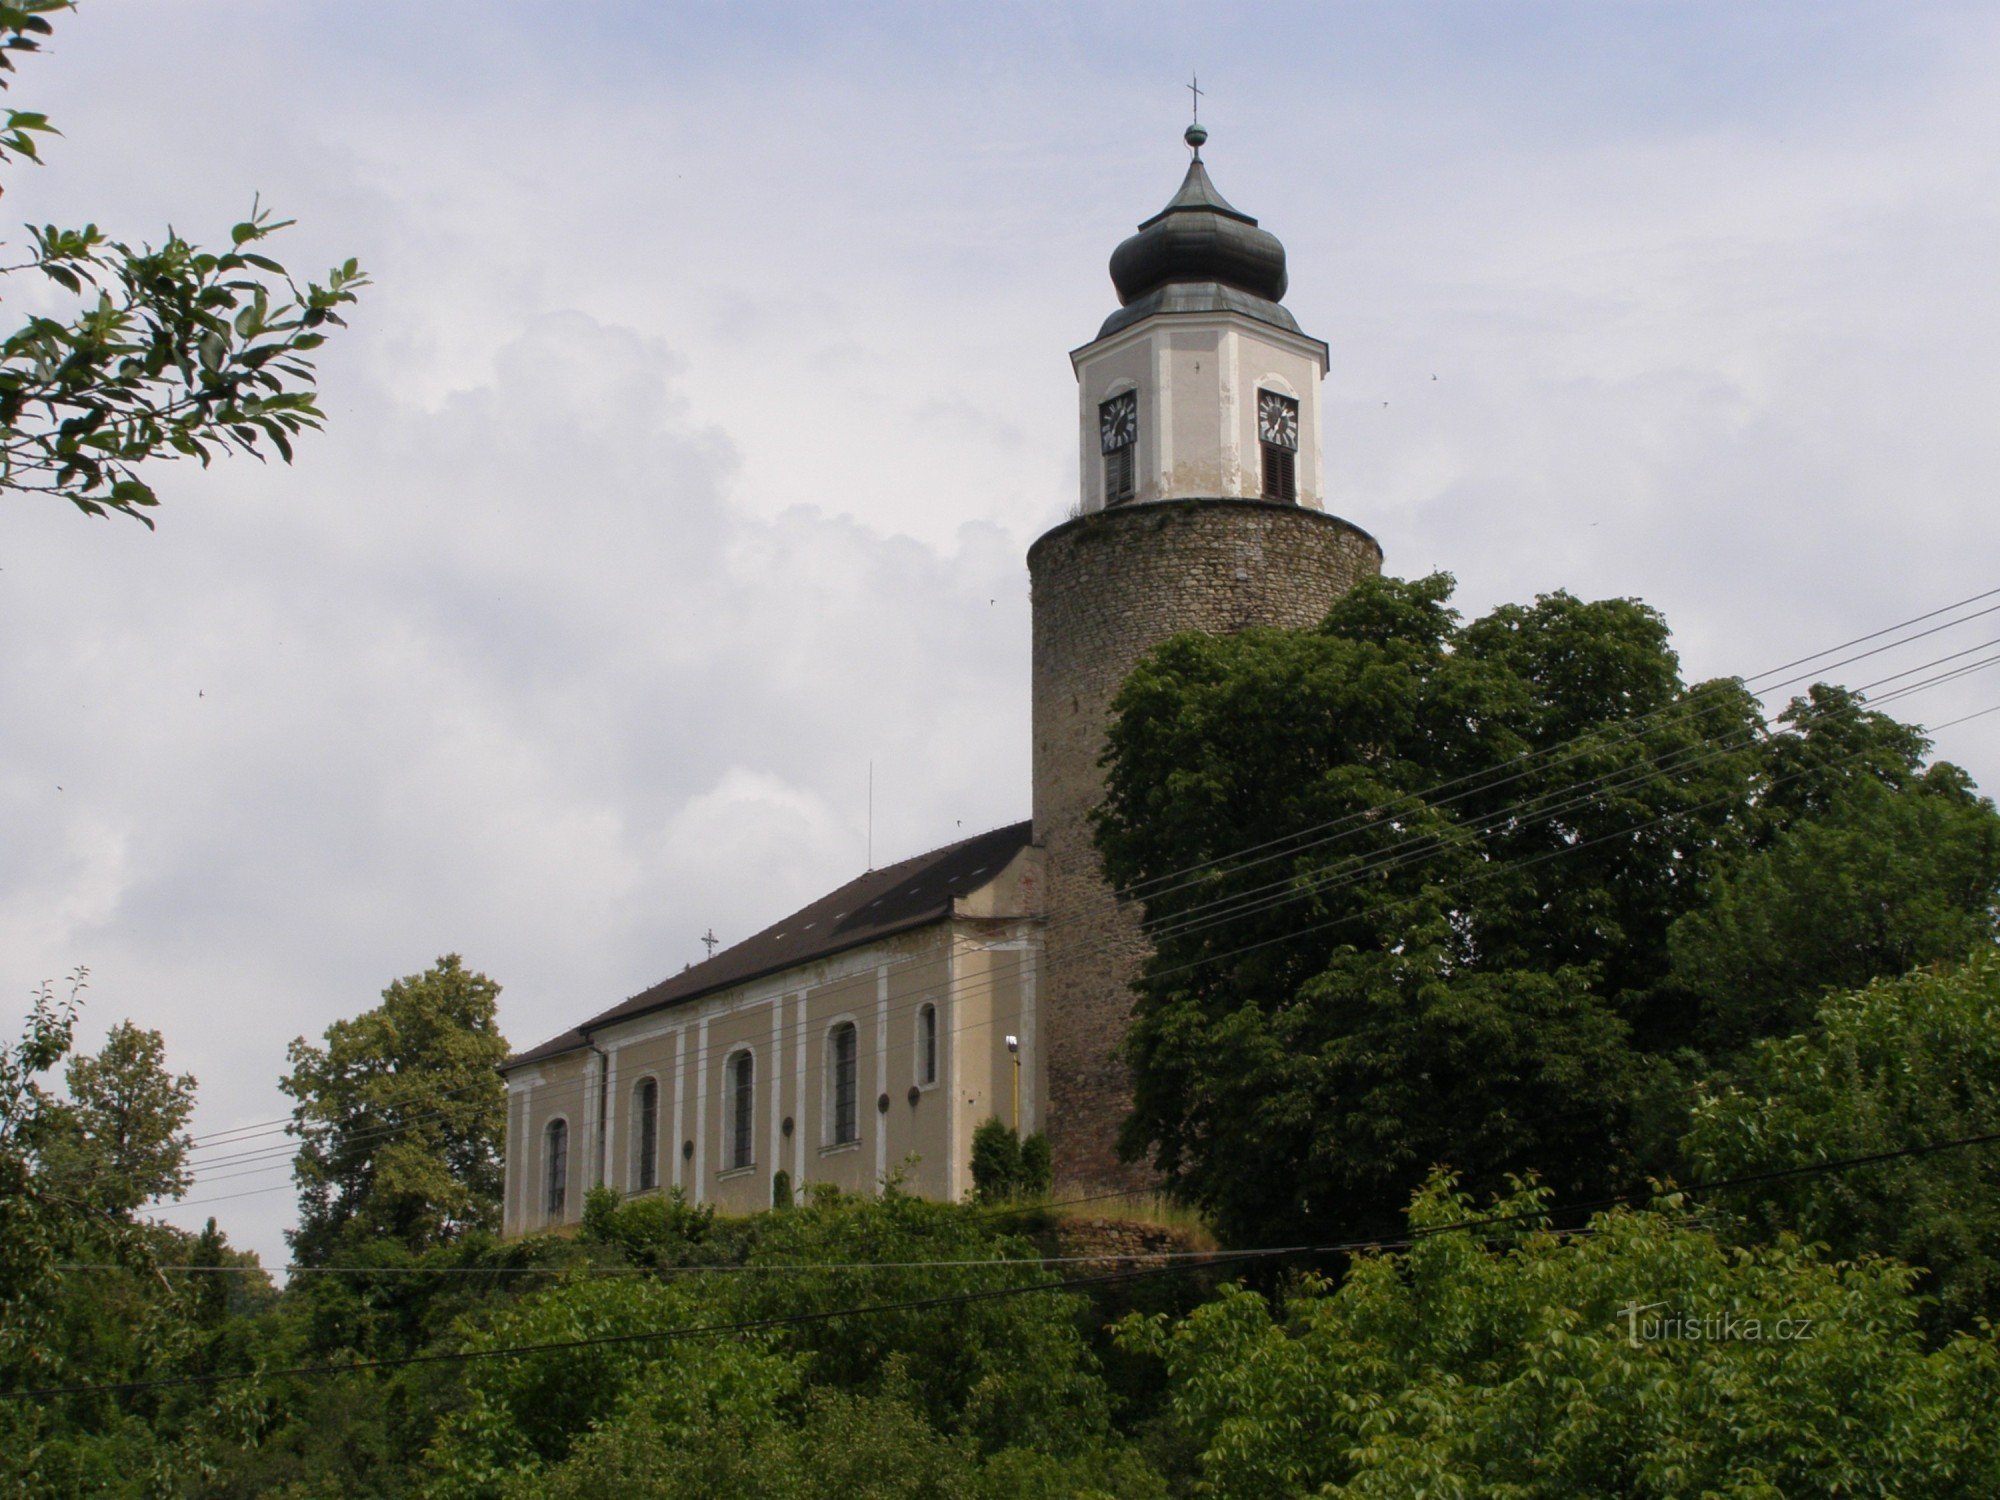 Žulová - Biserica Sf. Iosif cu turnul castelului